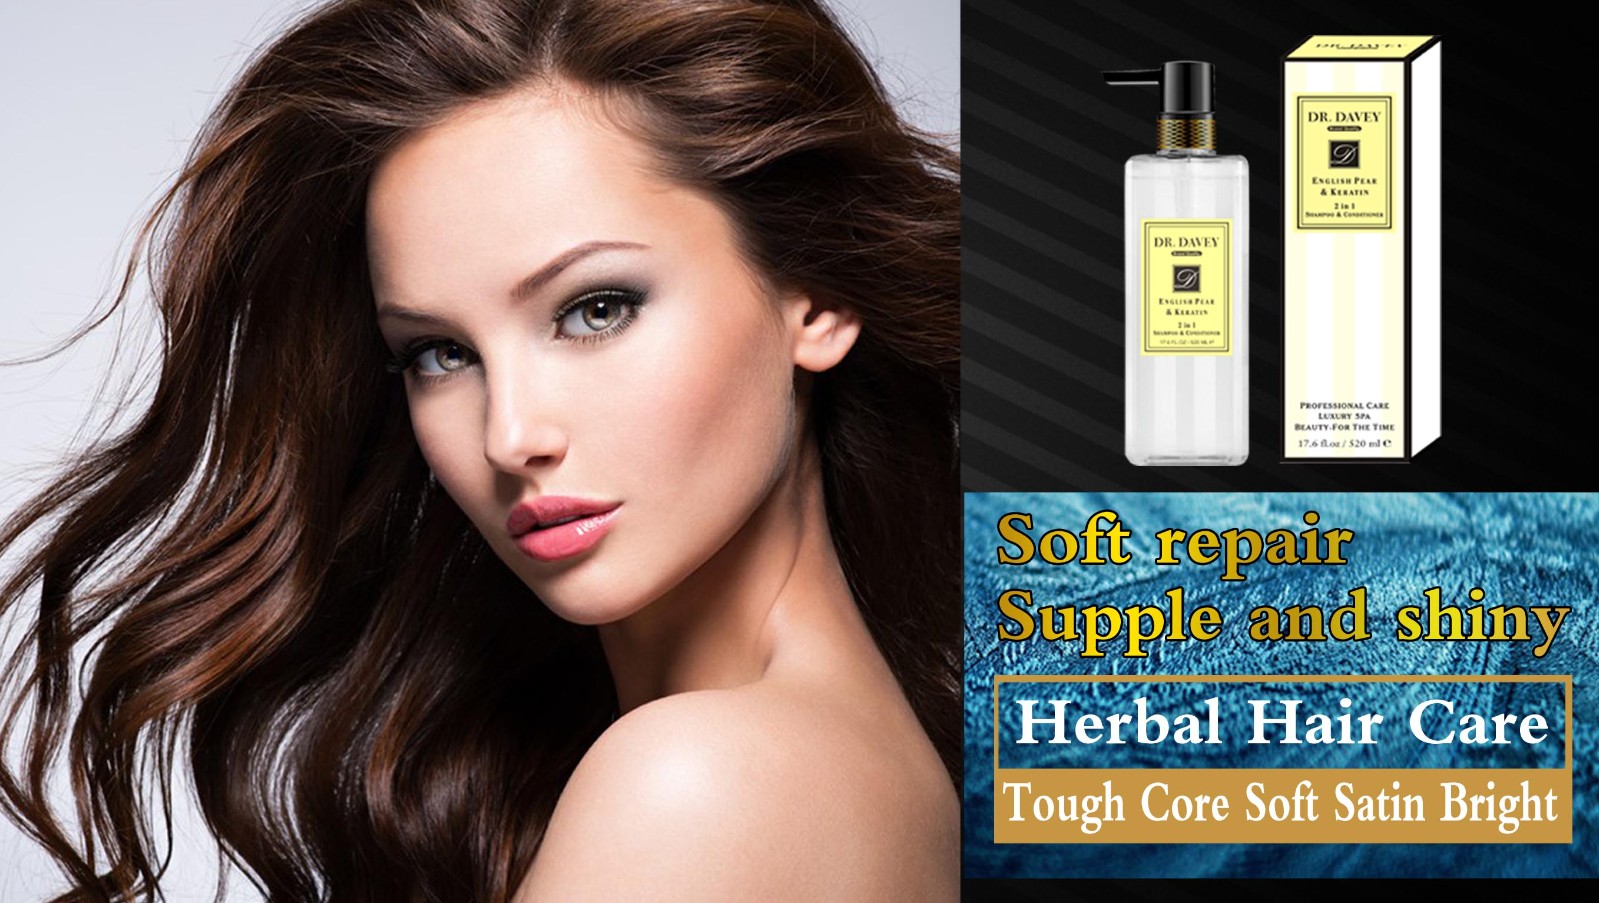 DR.DAVEY 2 in 1 keratin perfume shampoo smoothing hair   INGREDIENTS :